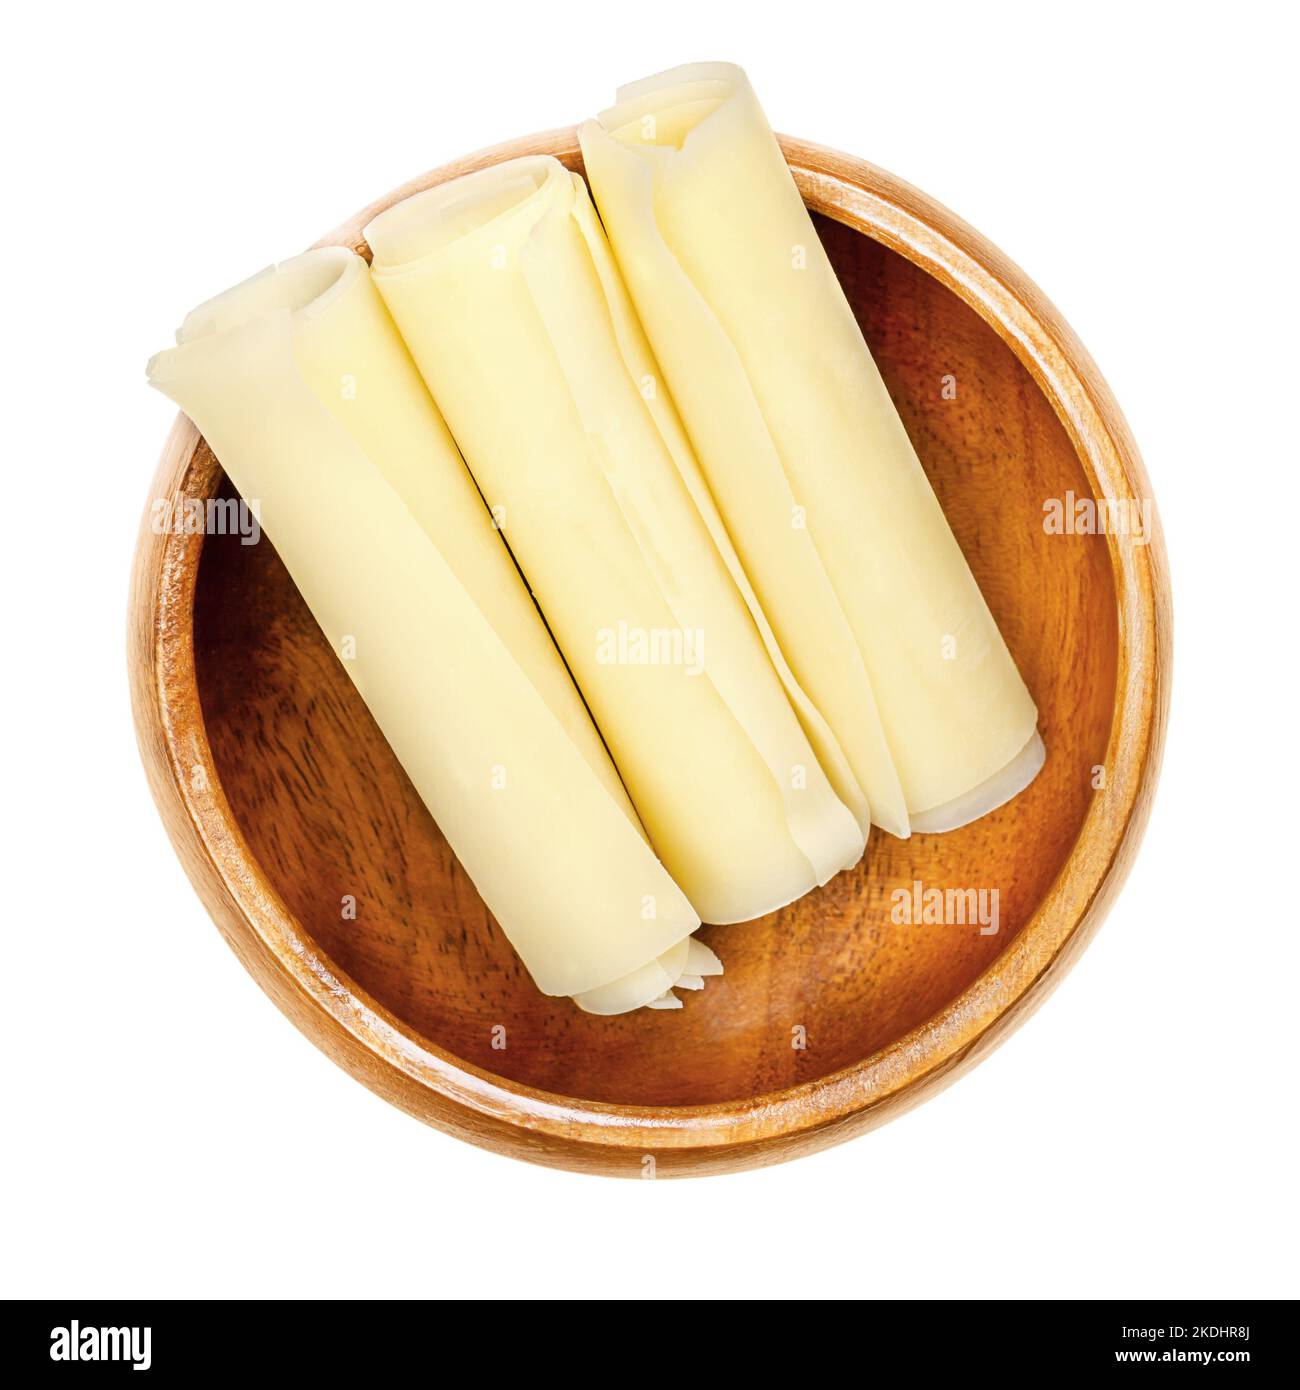 Sbrinz, rotoli di formaggio a pasta dura svizzera, in una ciotola di legno. Tre fette sottili di formaggio pieno extra duro, prodotto nella Svizzera centrale. Foto Stock